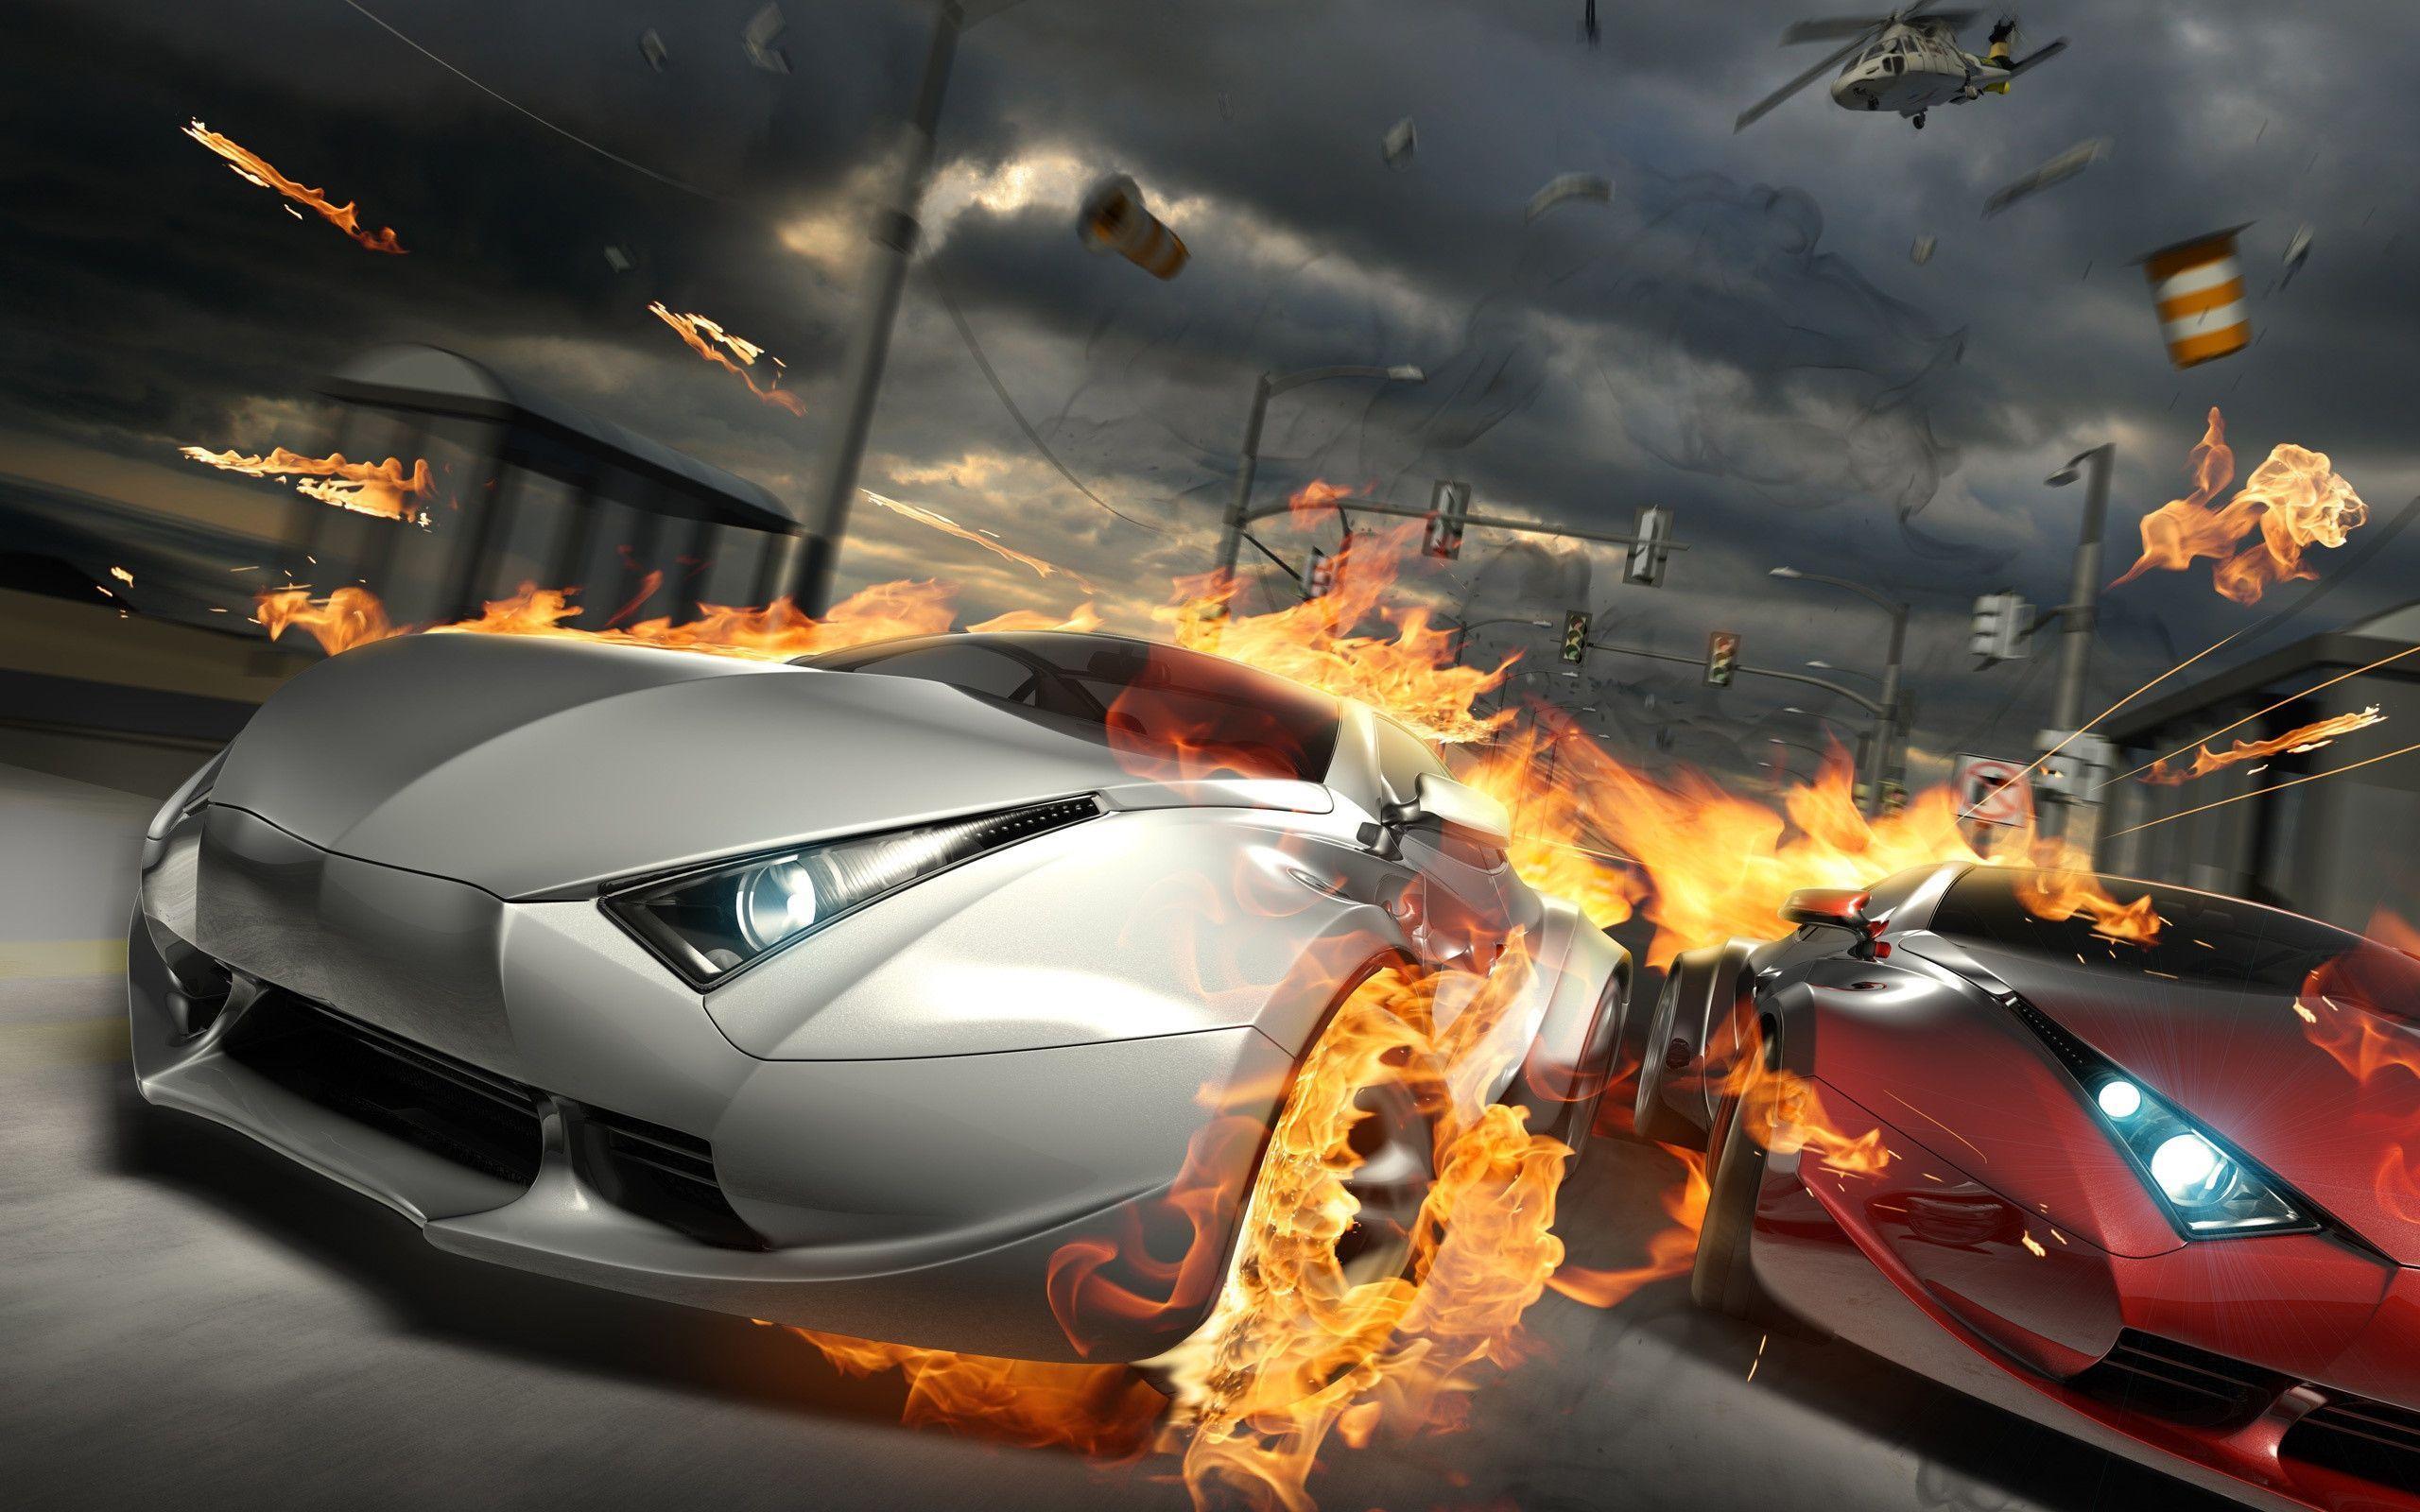 Destructive Car Race HD Wallpaper